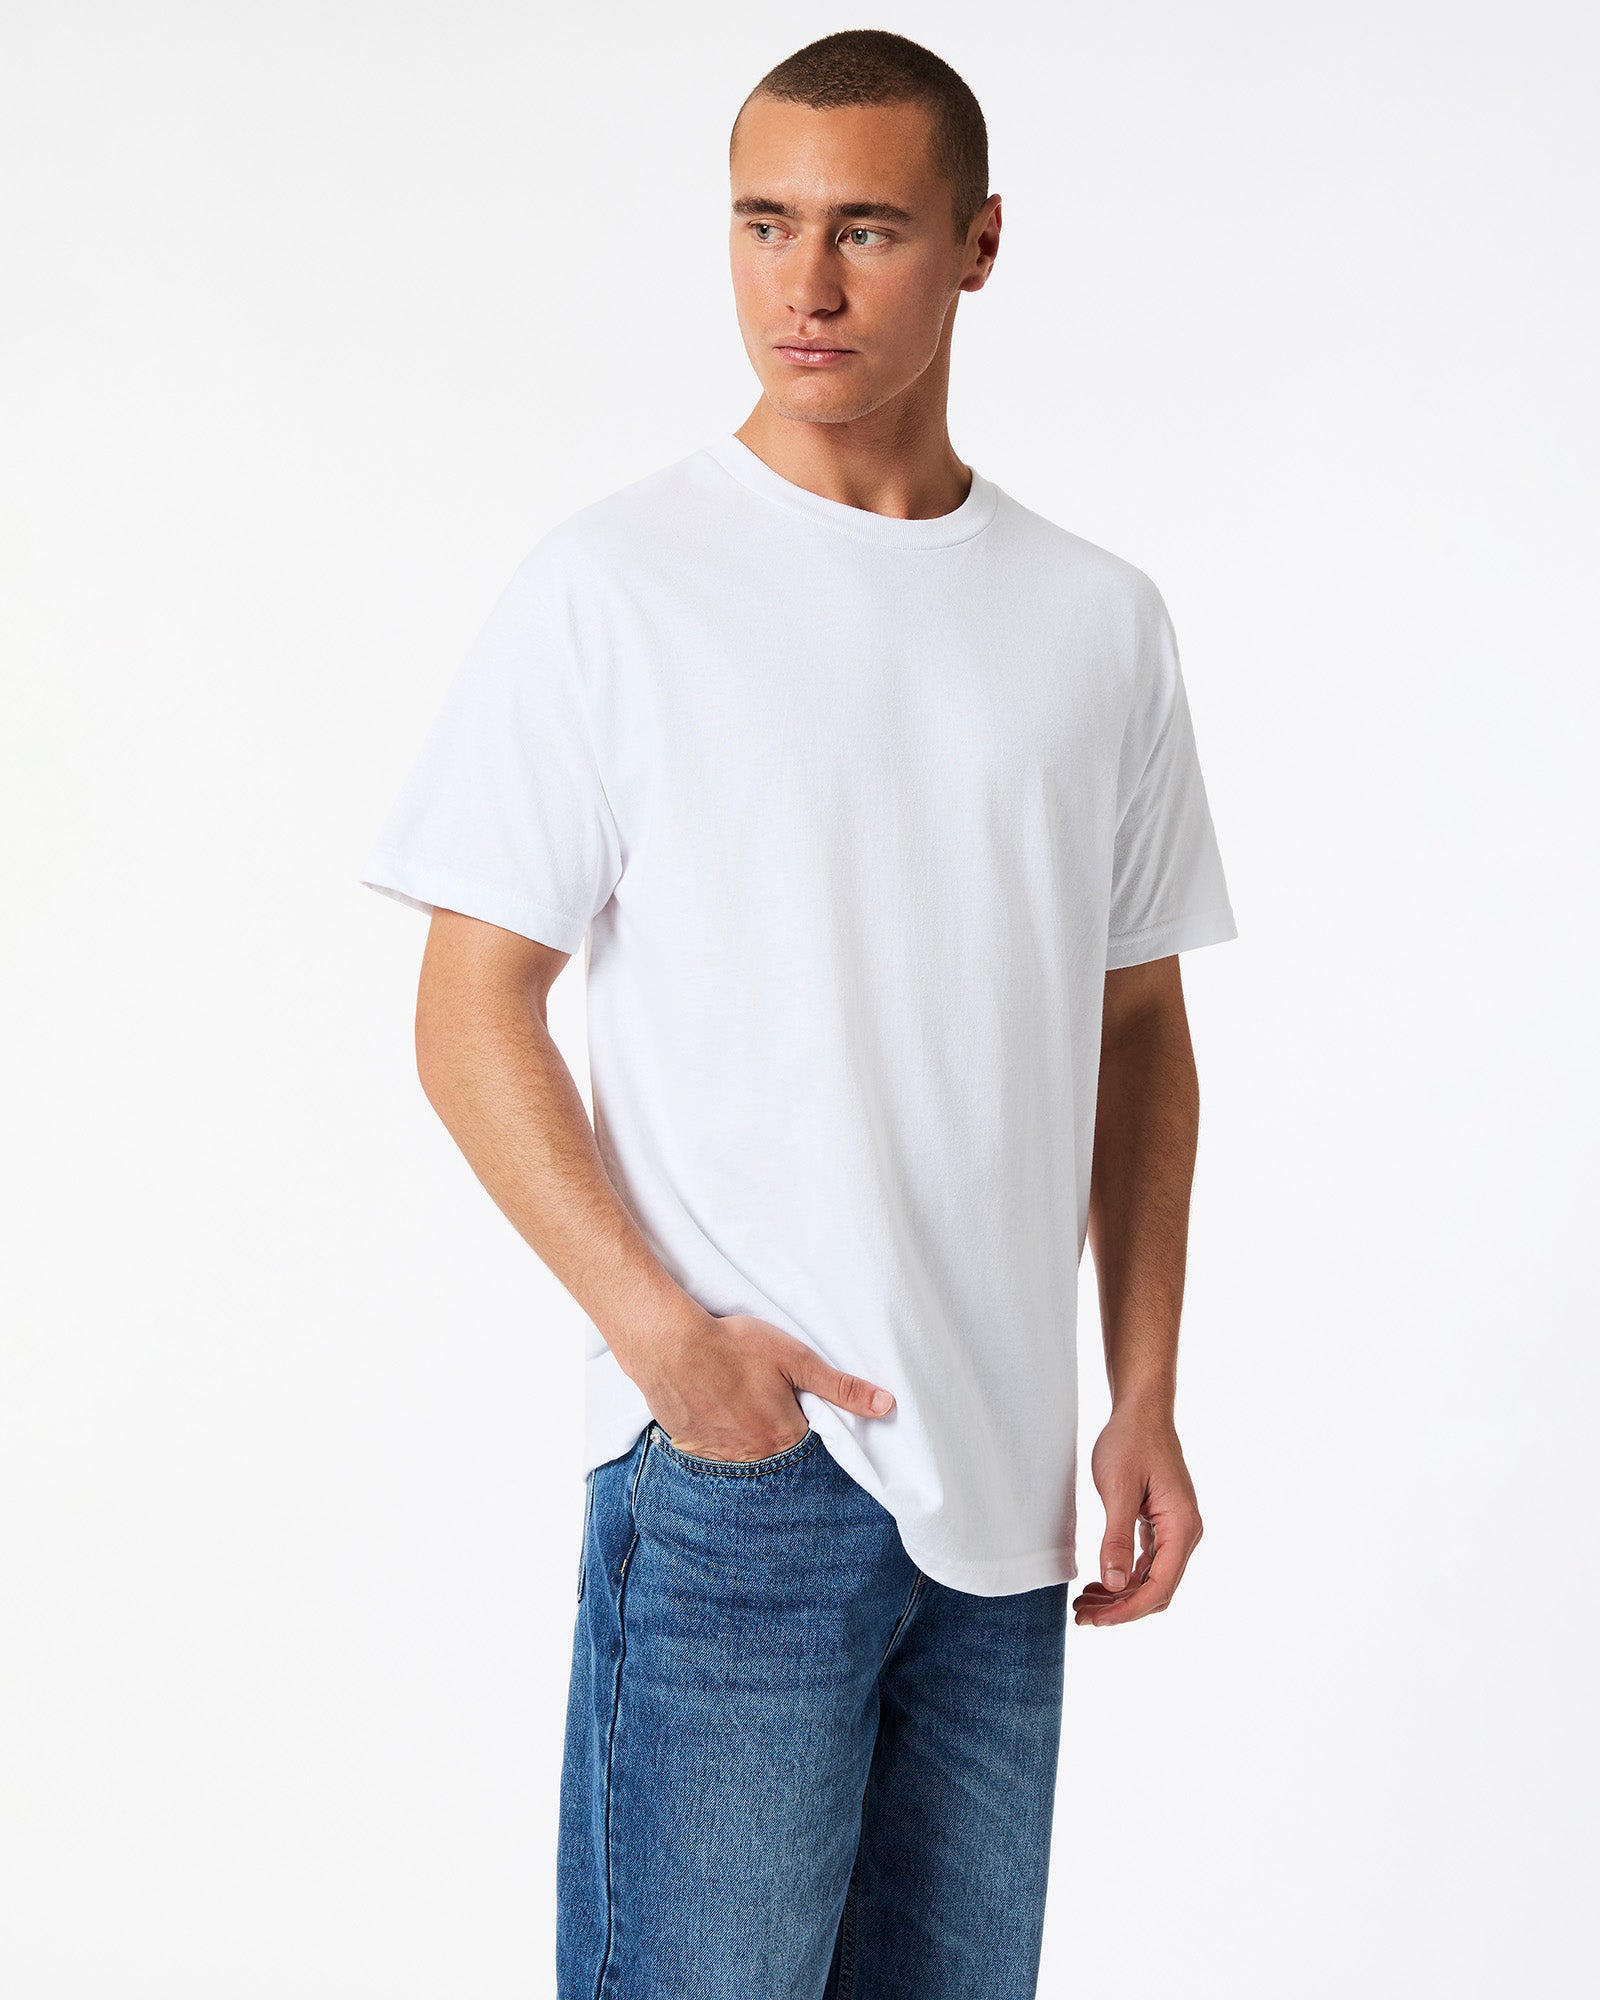 Pack of 6 Heavyweight Unisex T-Shirt - White